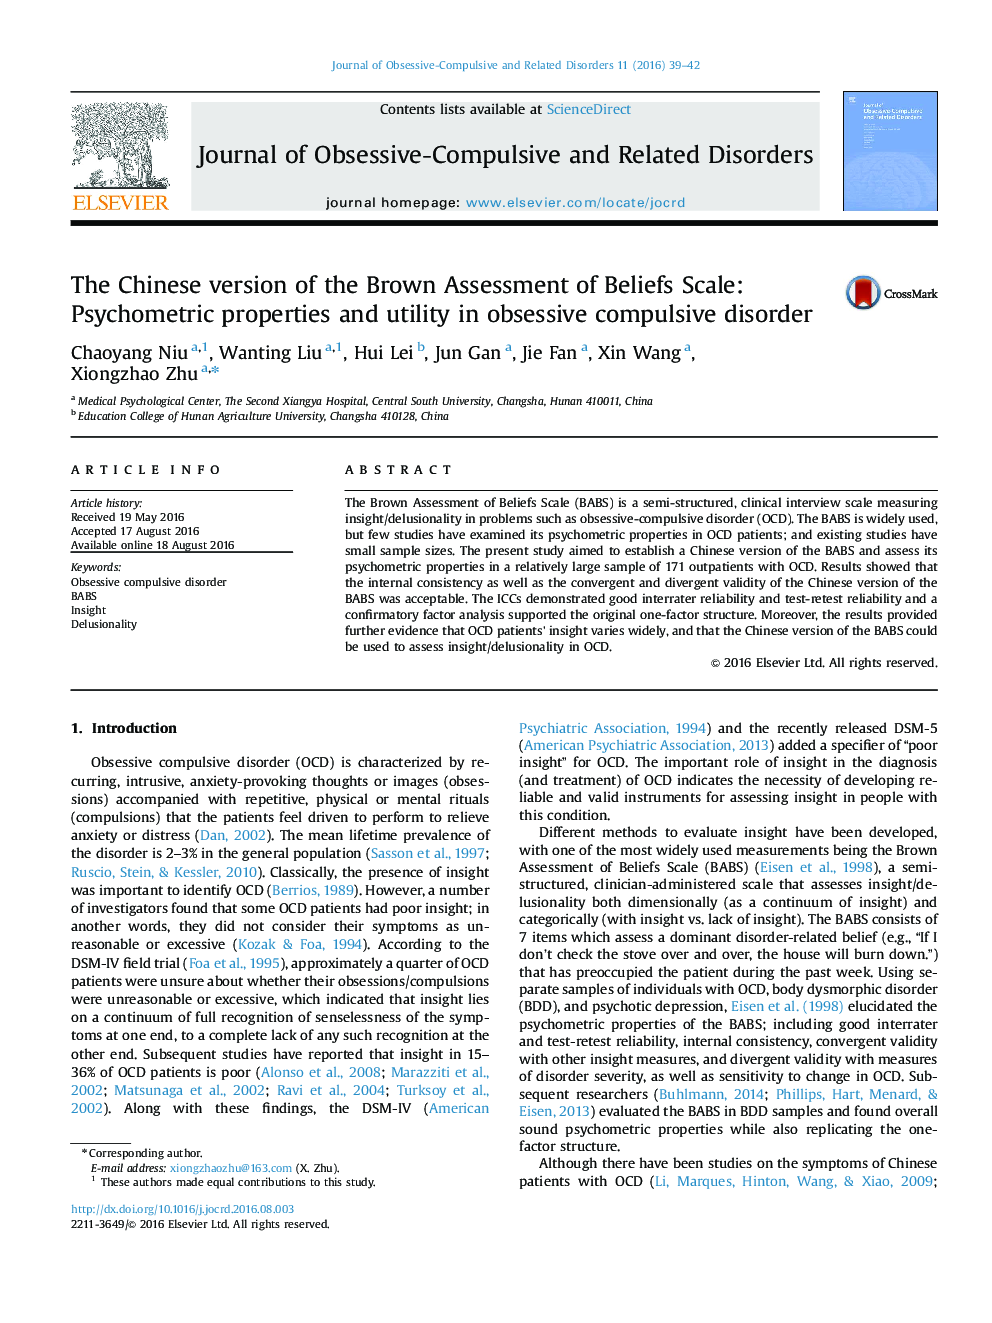 نسخه چینی از ارزیابی براون از معیار باورها: ویژگی های روانسنجی و ابزار در اختلال وسواس فکری عملی